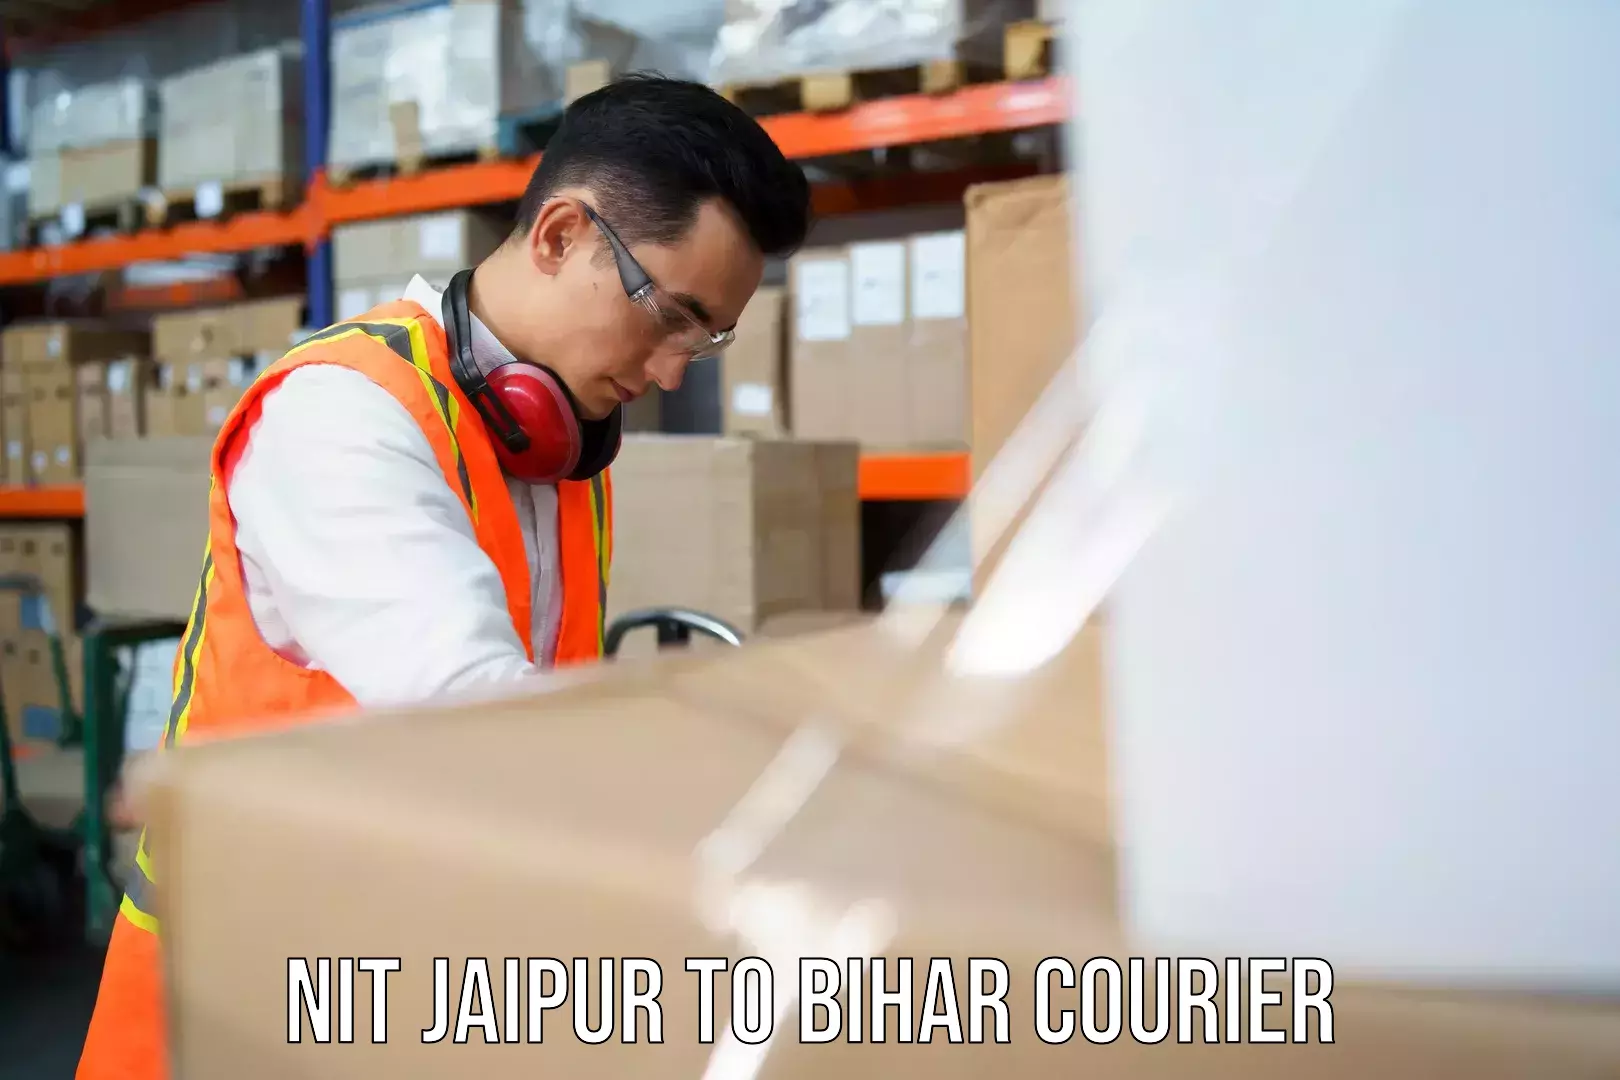 High-speed parcel service NIT Jaipur to Wazirganj